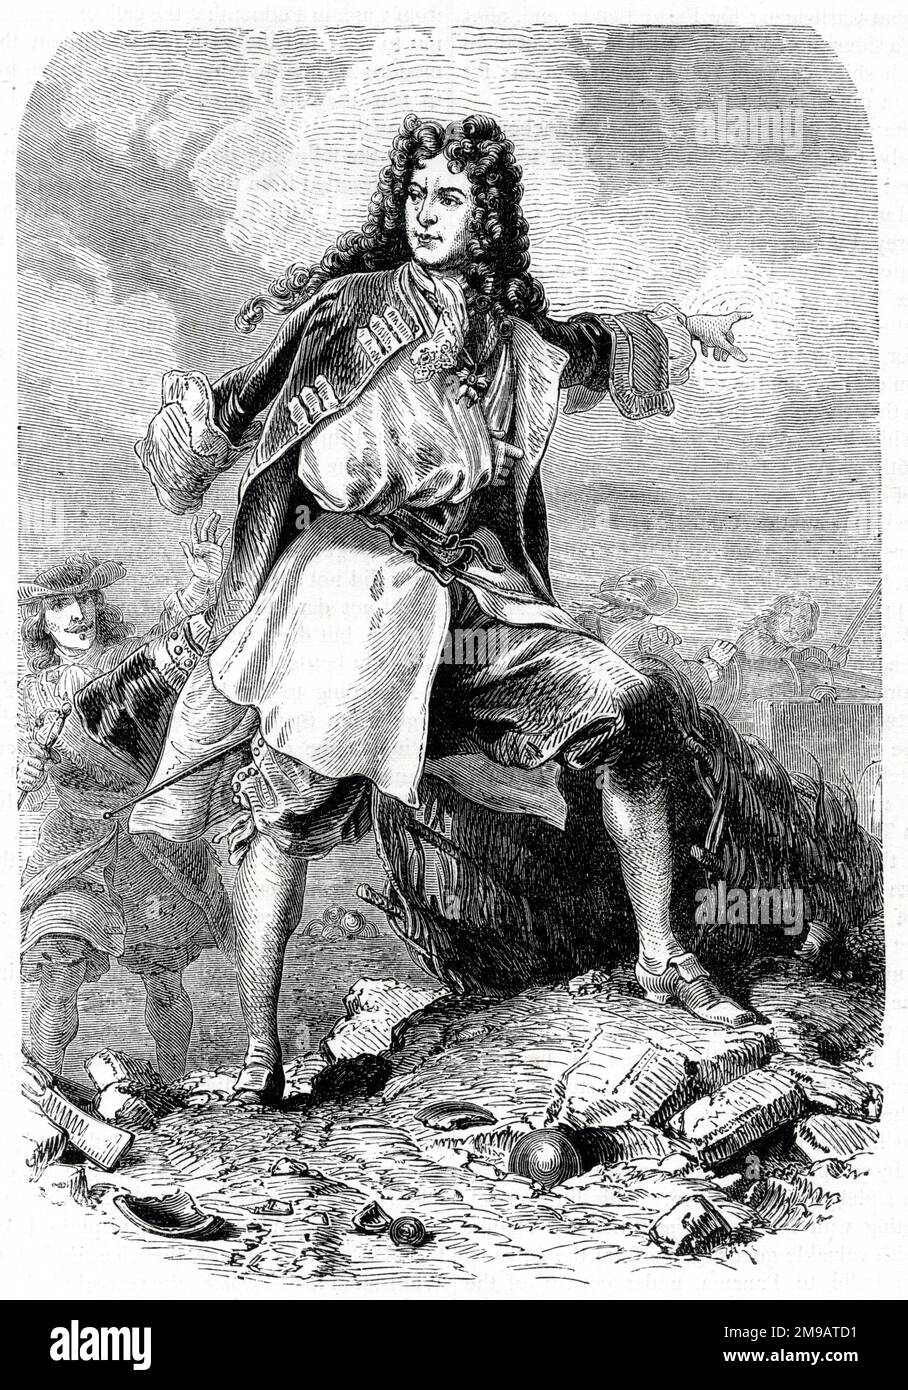 Louis Francois, Duca di Boufflers, Maresciallo di Francia (1644-1711), soldato francese che combatté in molte battaglie e campagne militari, durante la Guerra della Grande Alleanza e la Guerra di successione spagnola. Foto Stock